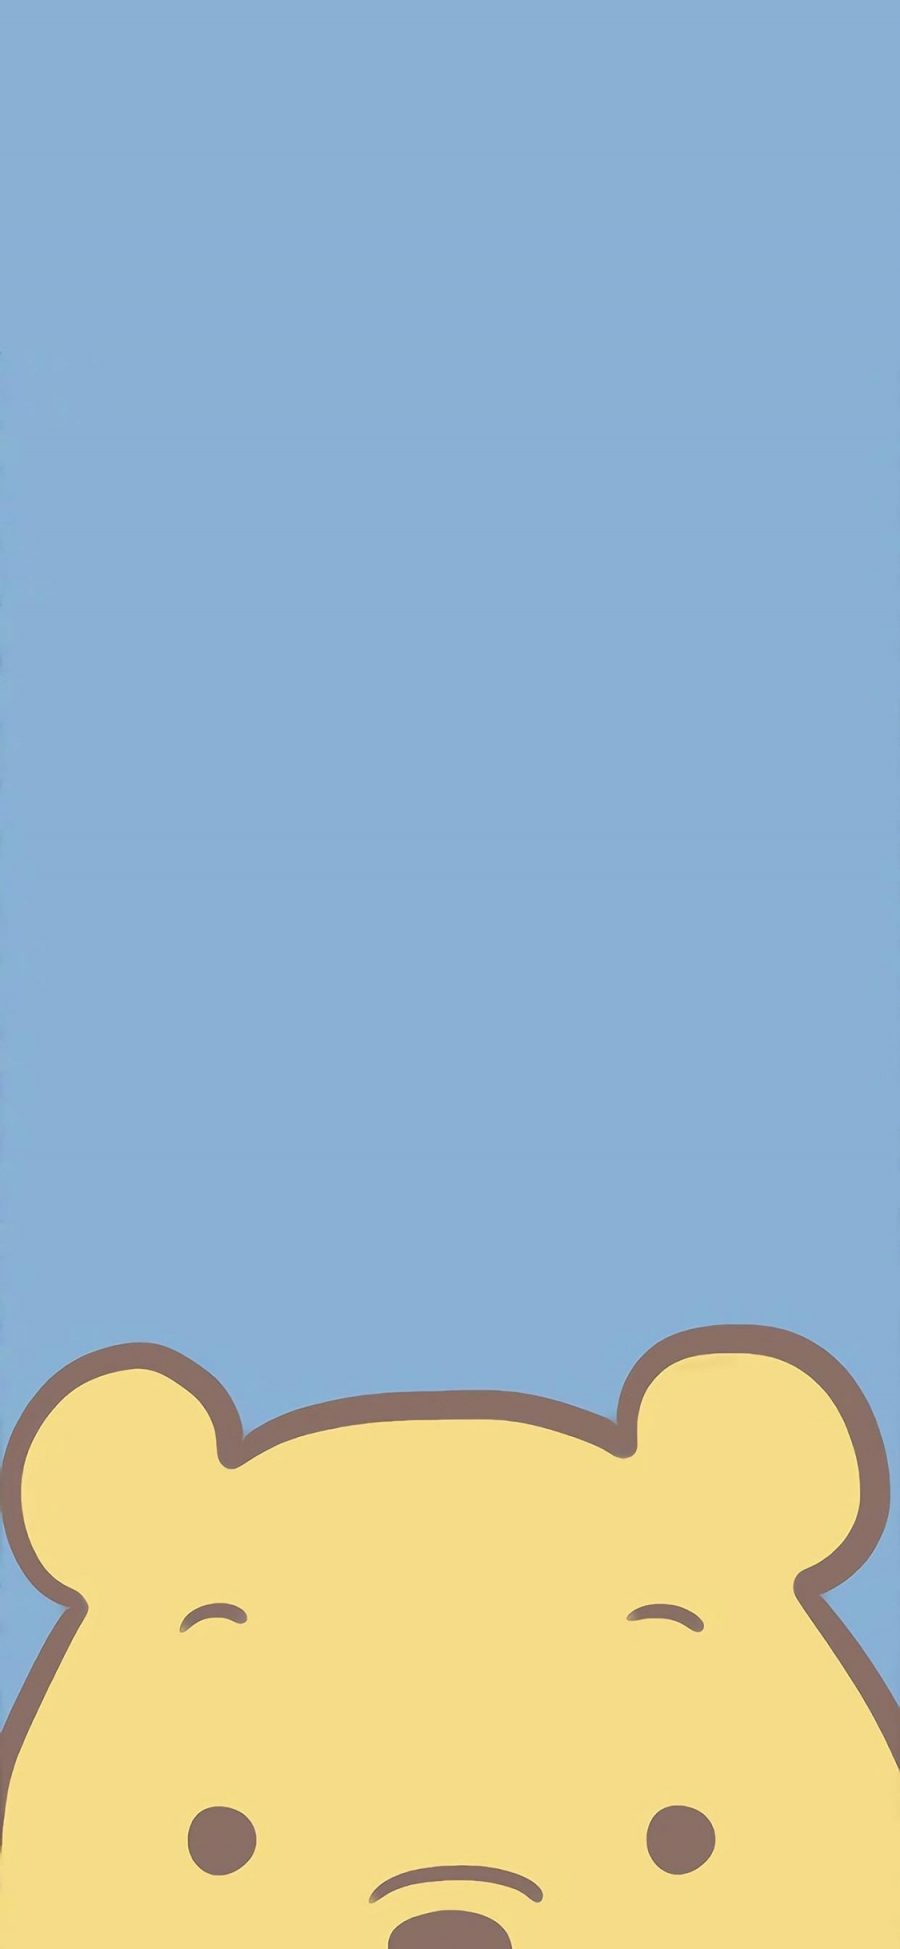 [2436×1125]小熊维尼 可爱 维尼熊 迪士尼 苹果手机动漫壁纸图片